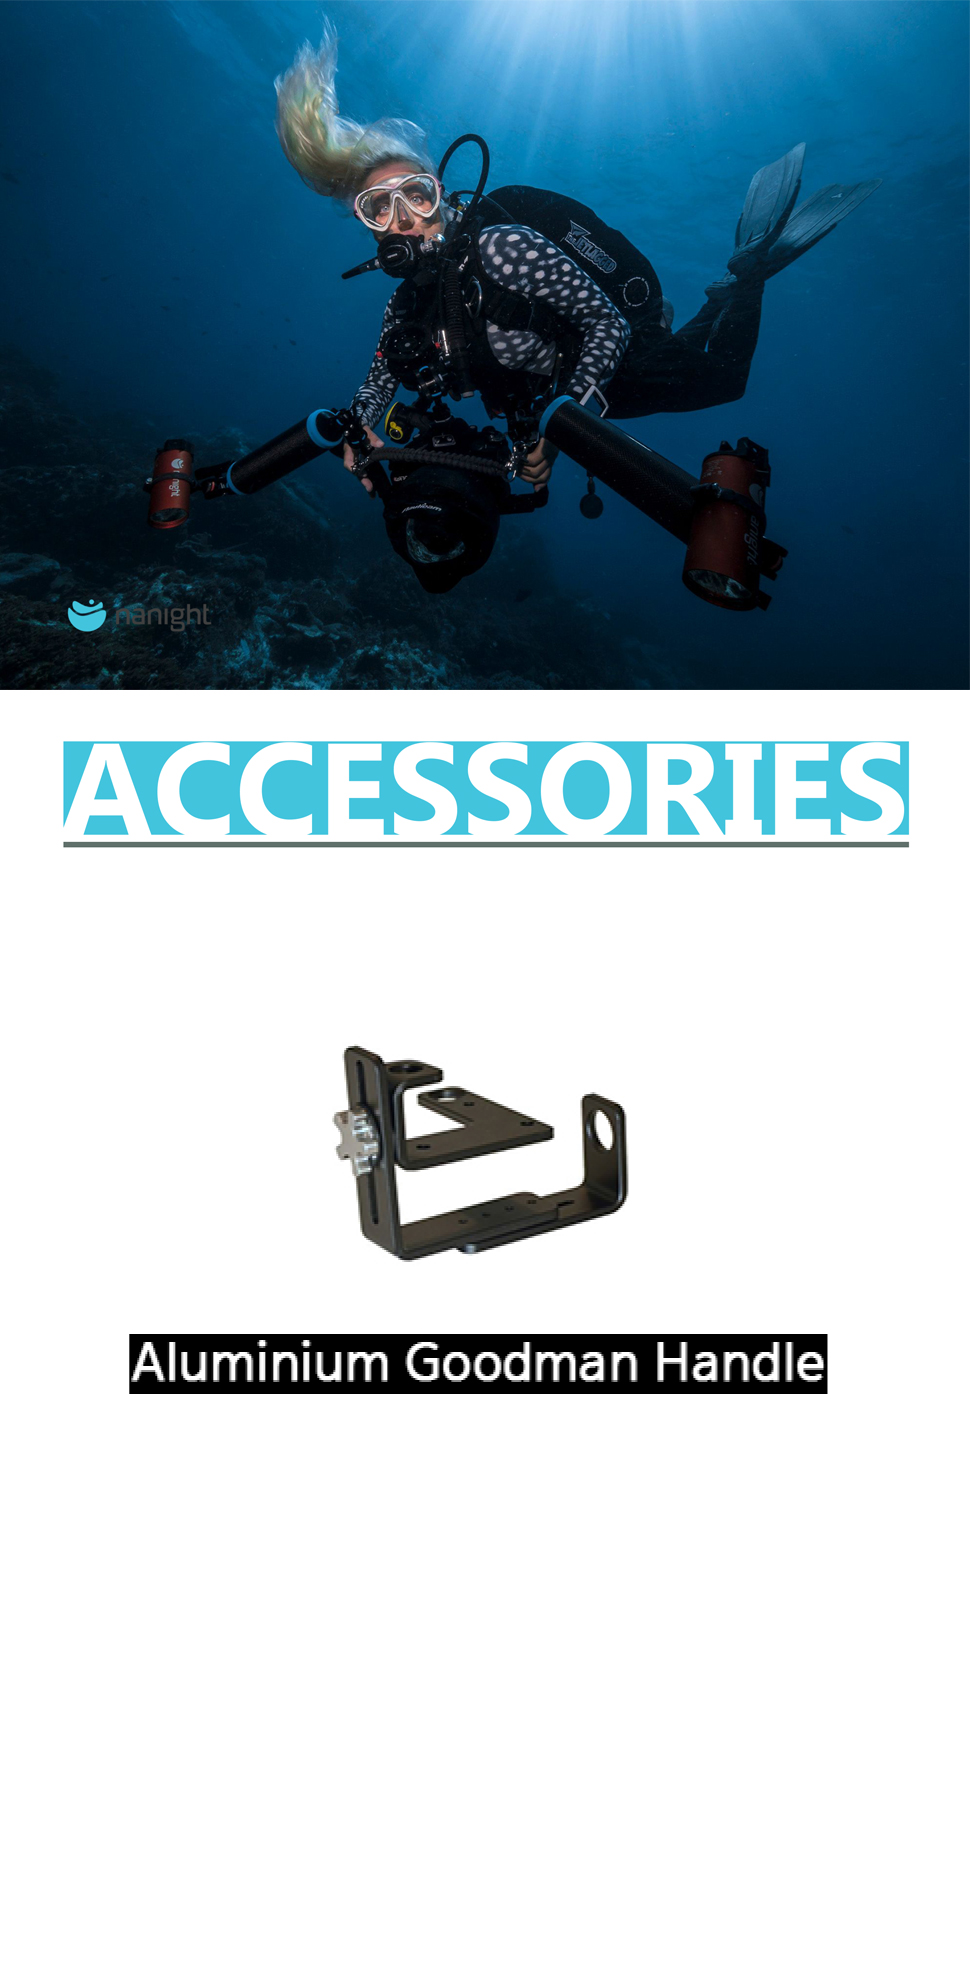 aluminiumgoodmanhandle_d.jpg